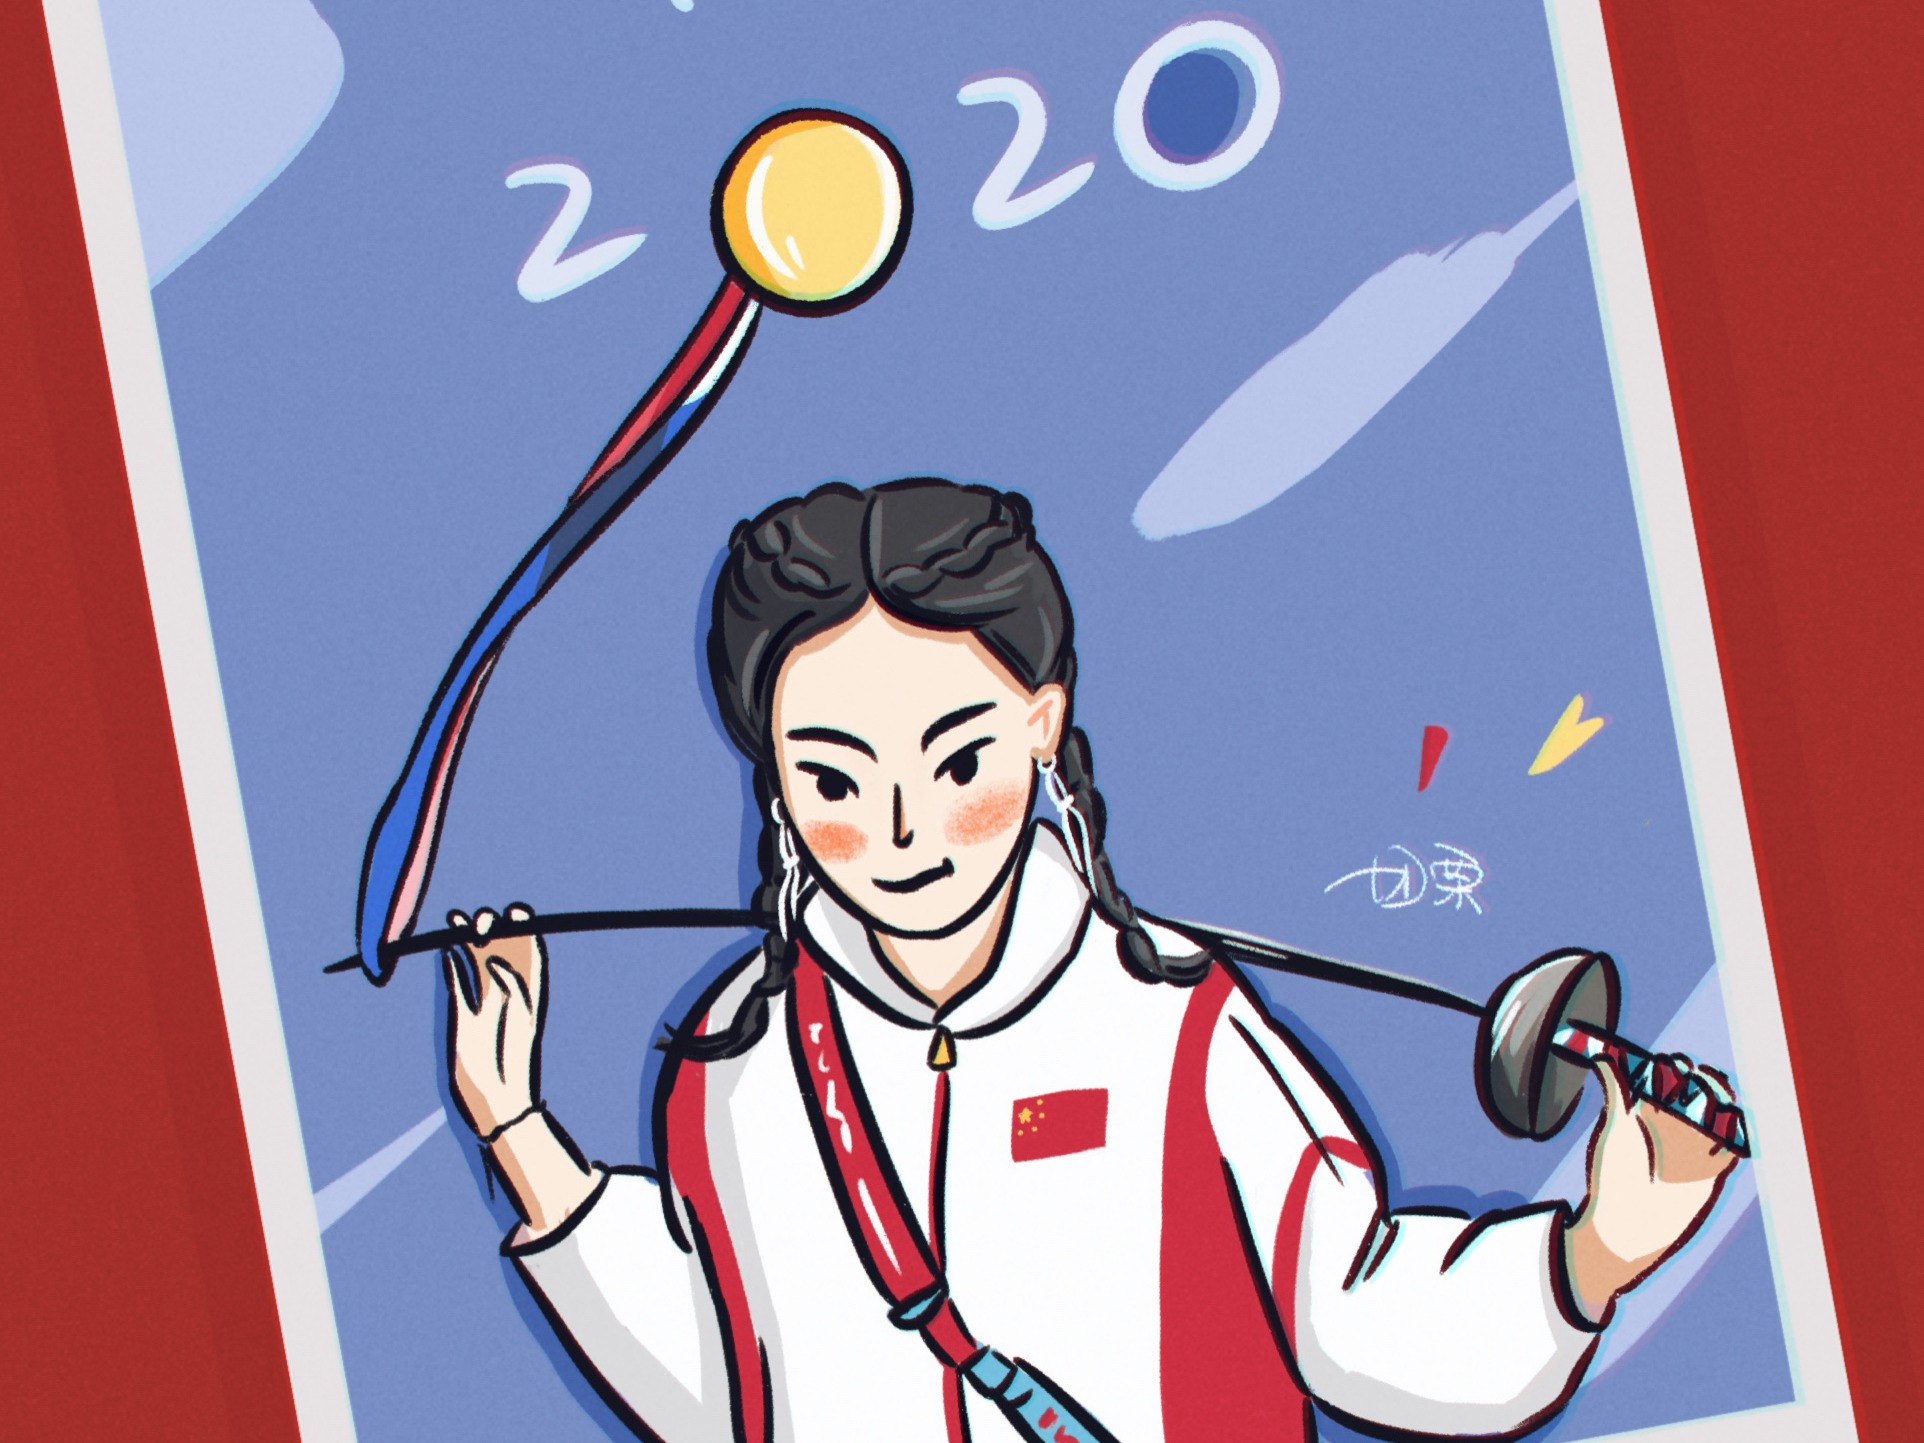 中国东京奥运会动漫图片